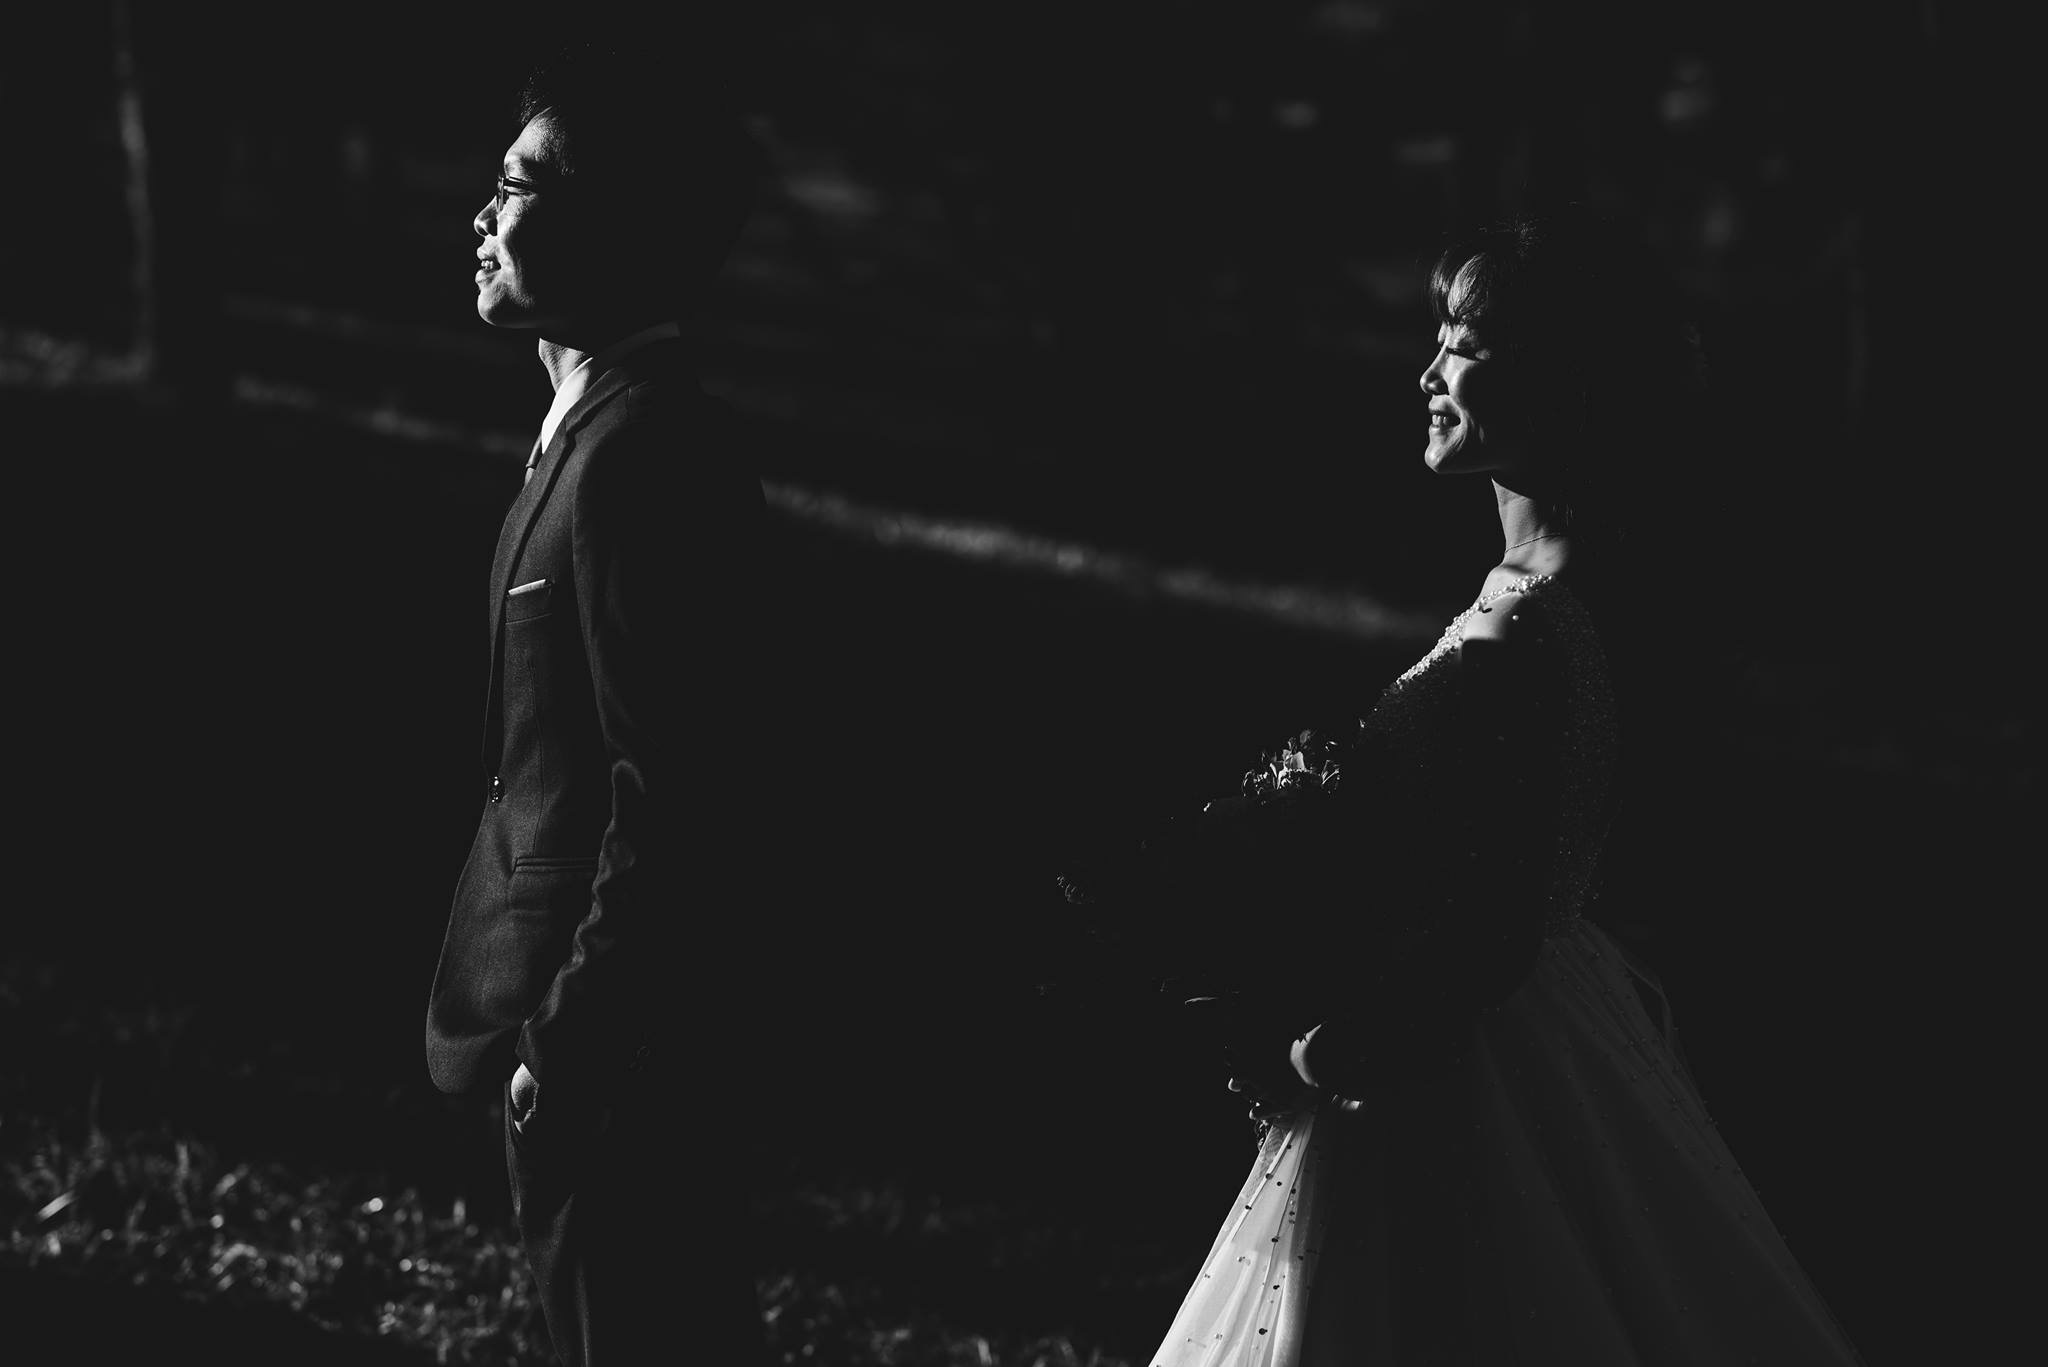 Xếp hạng 5 Studio chụp ảnh cưới đẹp nhất Lâm Đồng - Khánh An Bridal